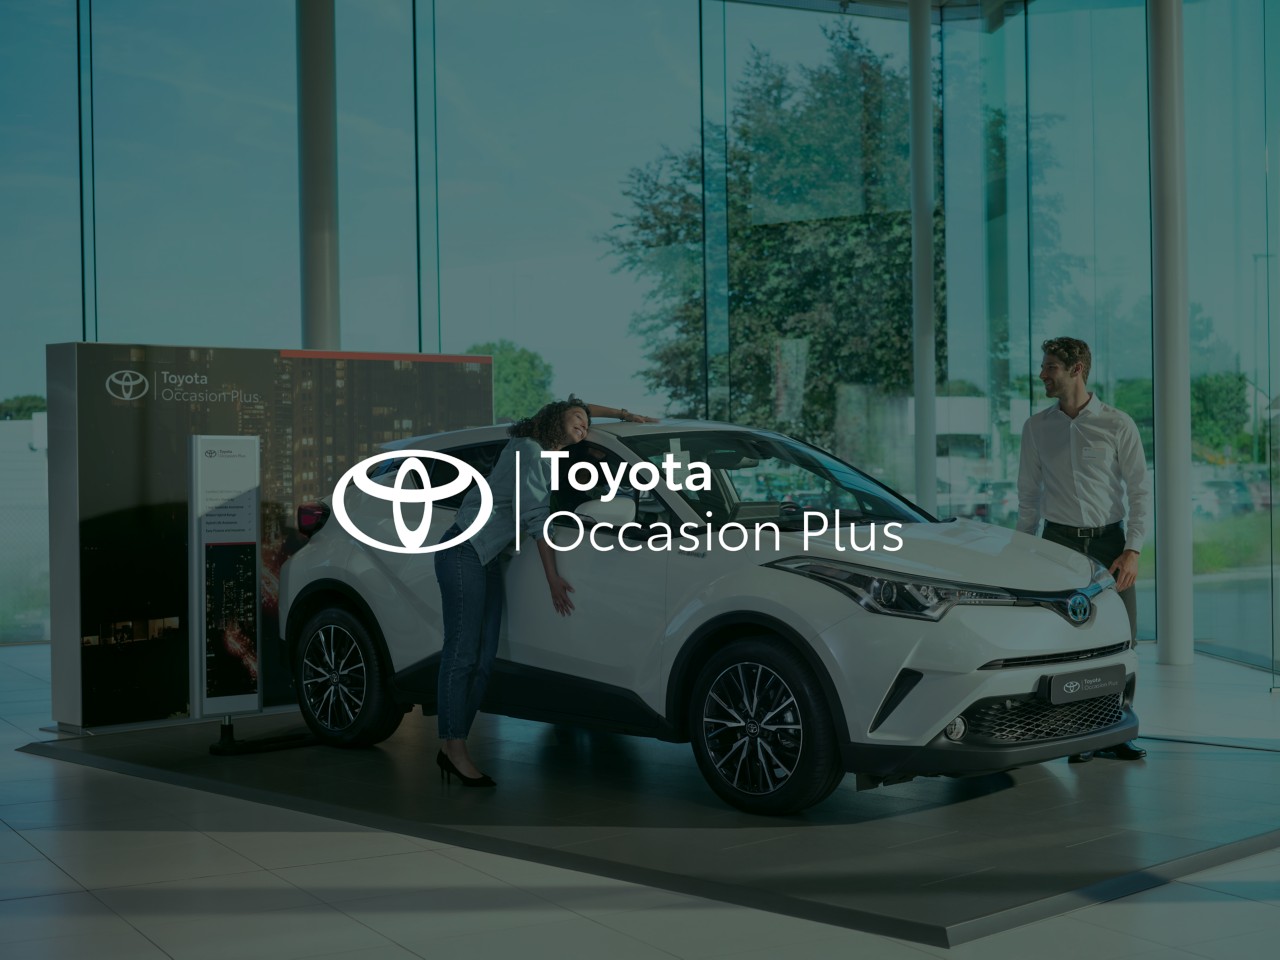 Toyota occasioni plus